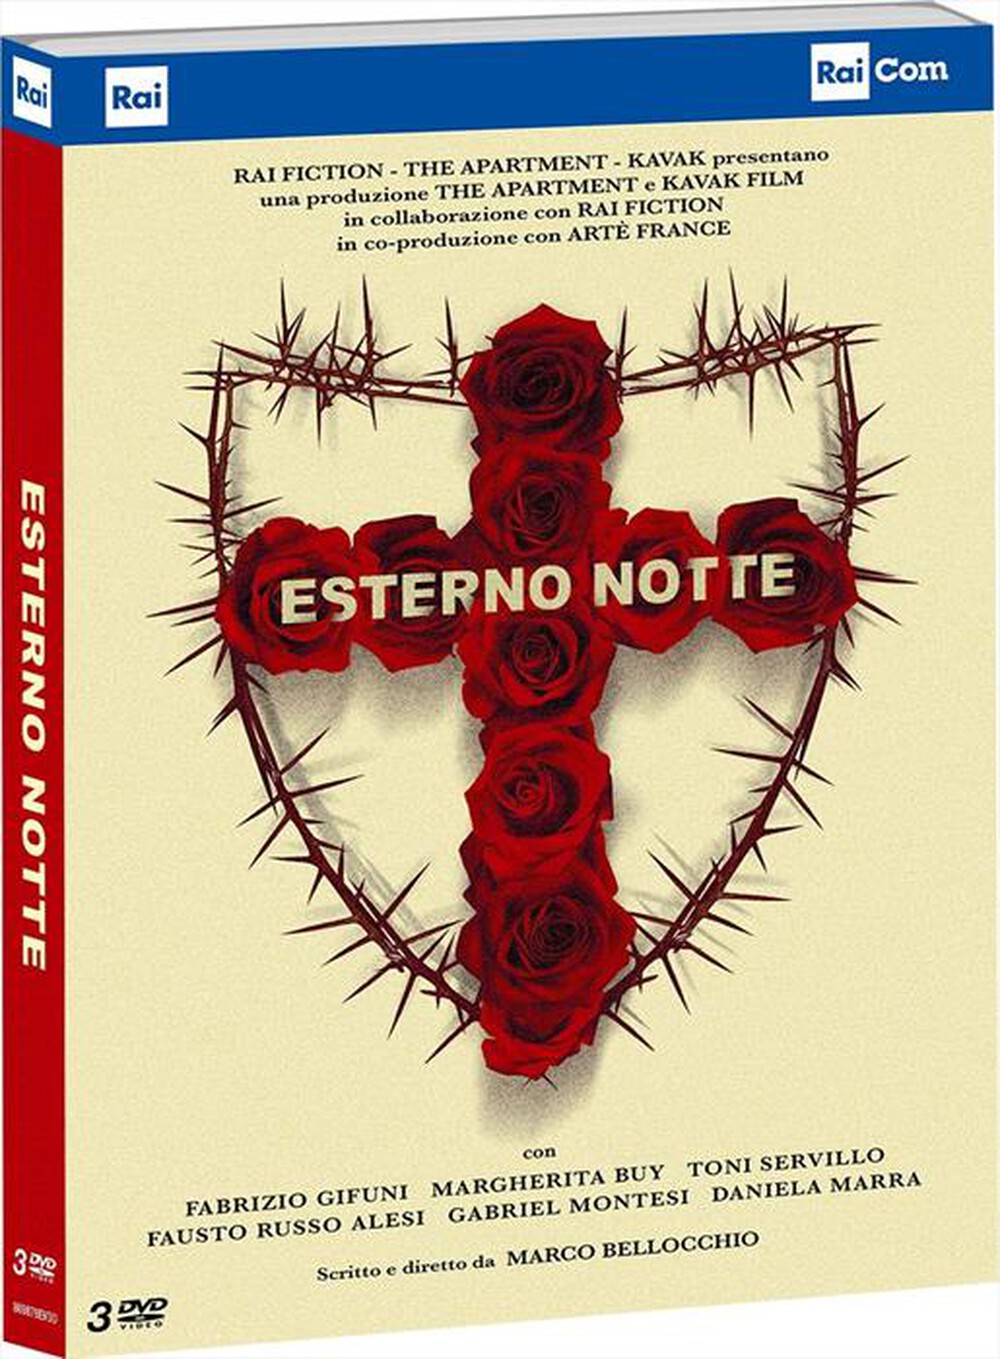 "Rai.com - Esterno Notte (3 Dvd)"